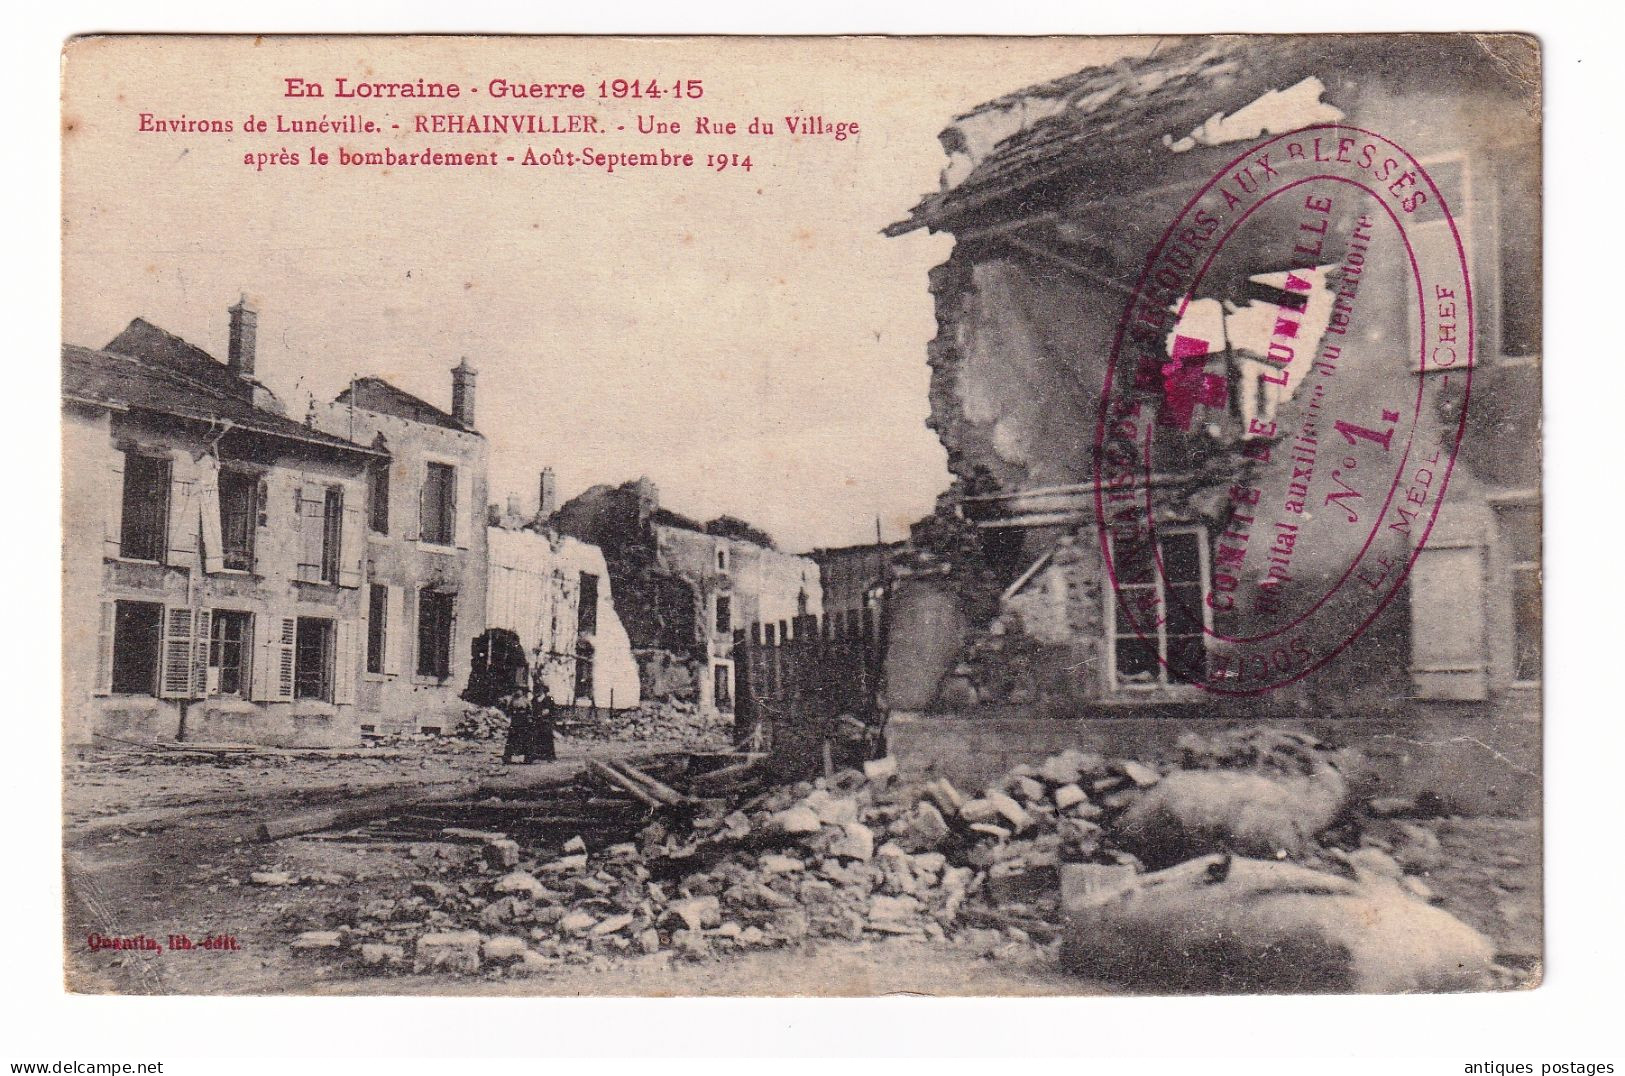 Hôpital Auxiliaire du Territoire Lunéville Croix Rouge 1915 Société Française de Secours aux Blessés Morbihan Ploemeur